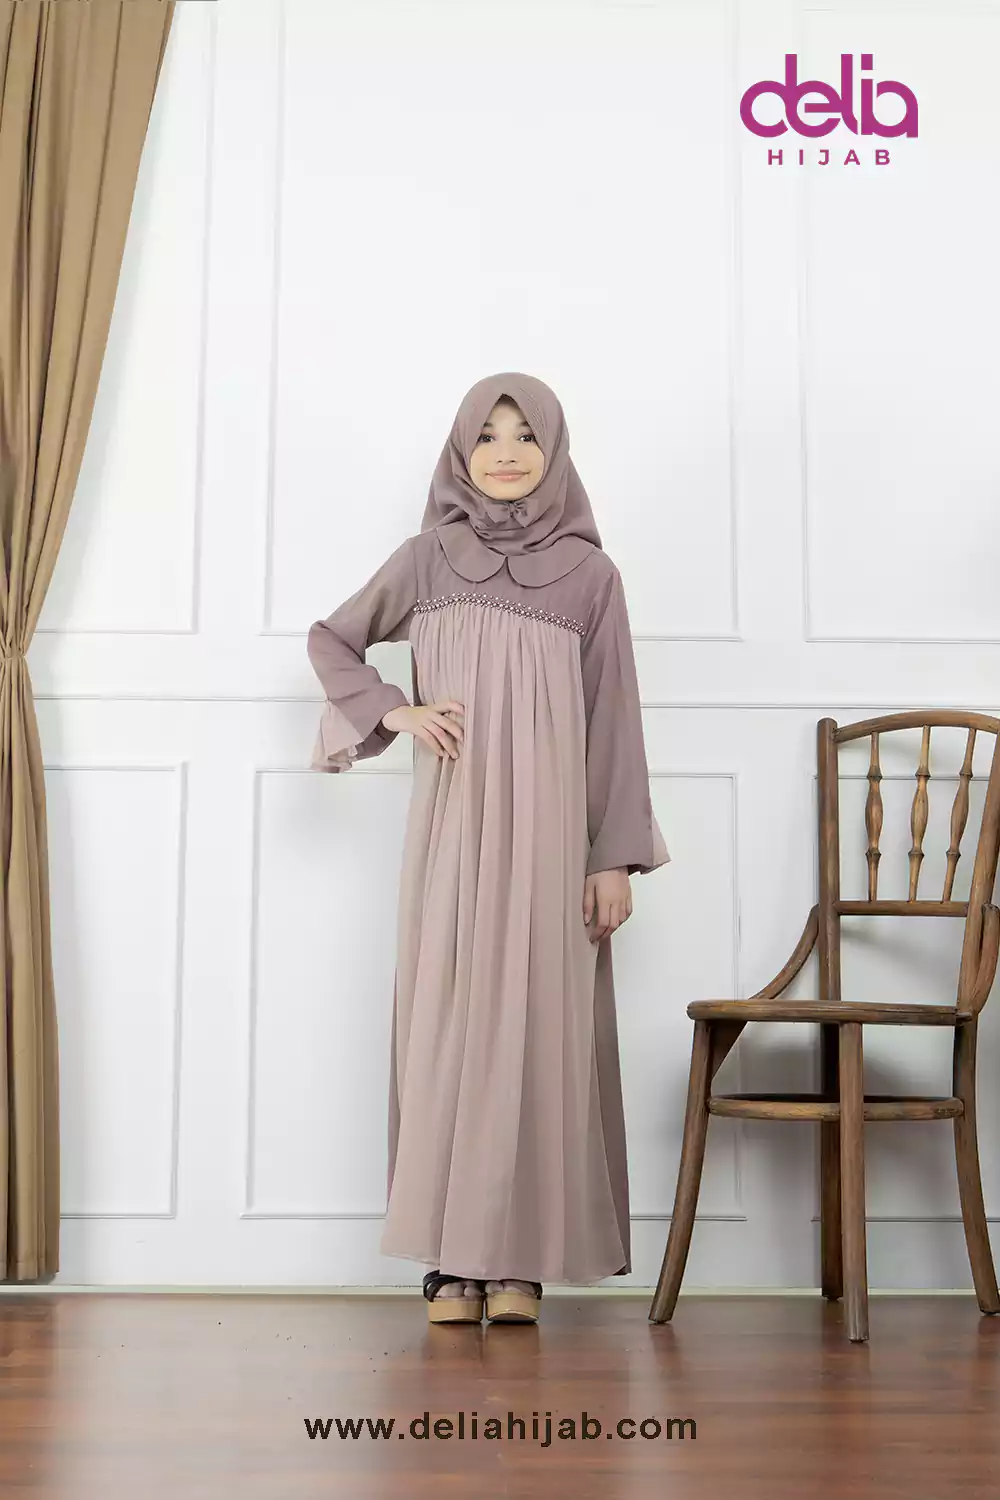 Baju Sarimbit Keluarga Muslim - Gamis Anak Sarimbit Diamond - Delia Hijab